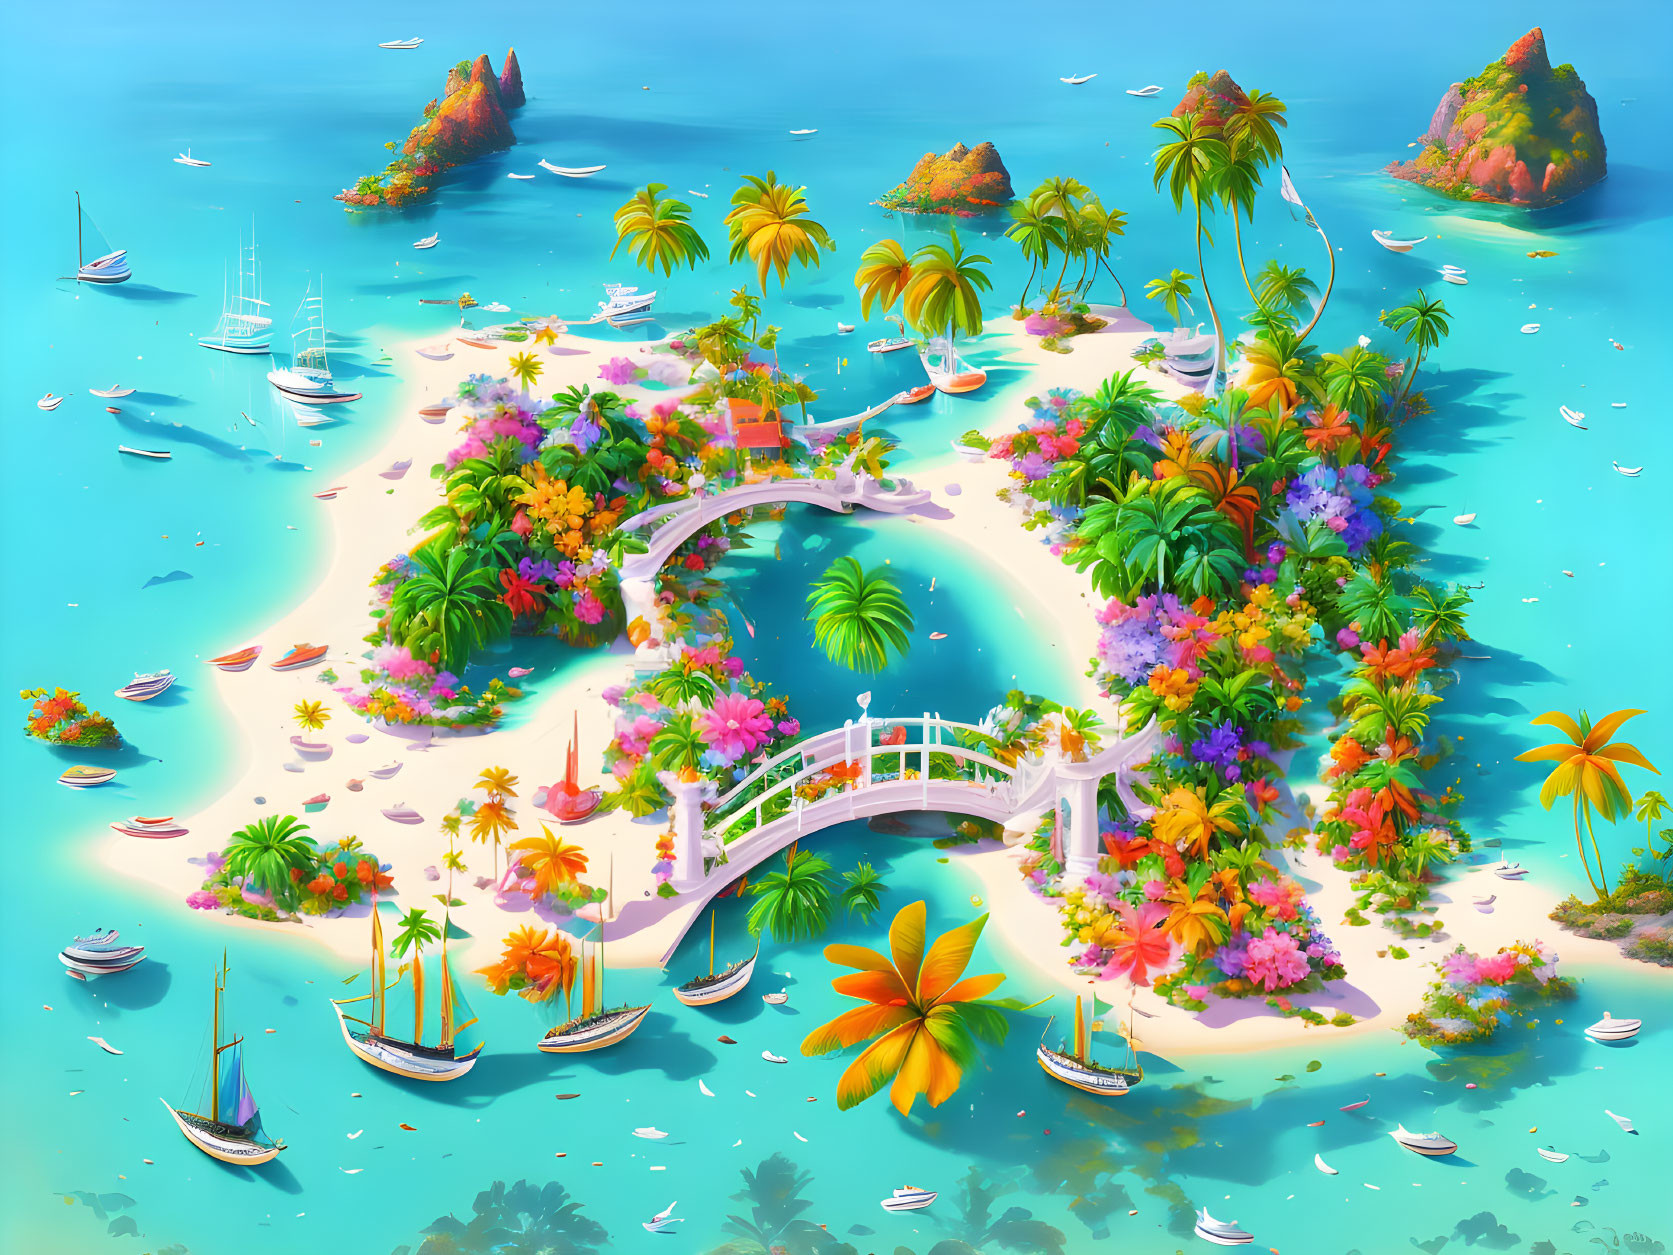 Yoshi's Tropical Island (Mario Party)